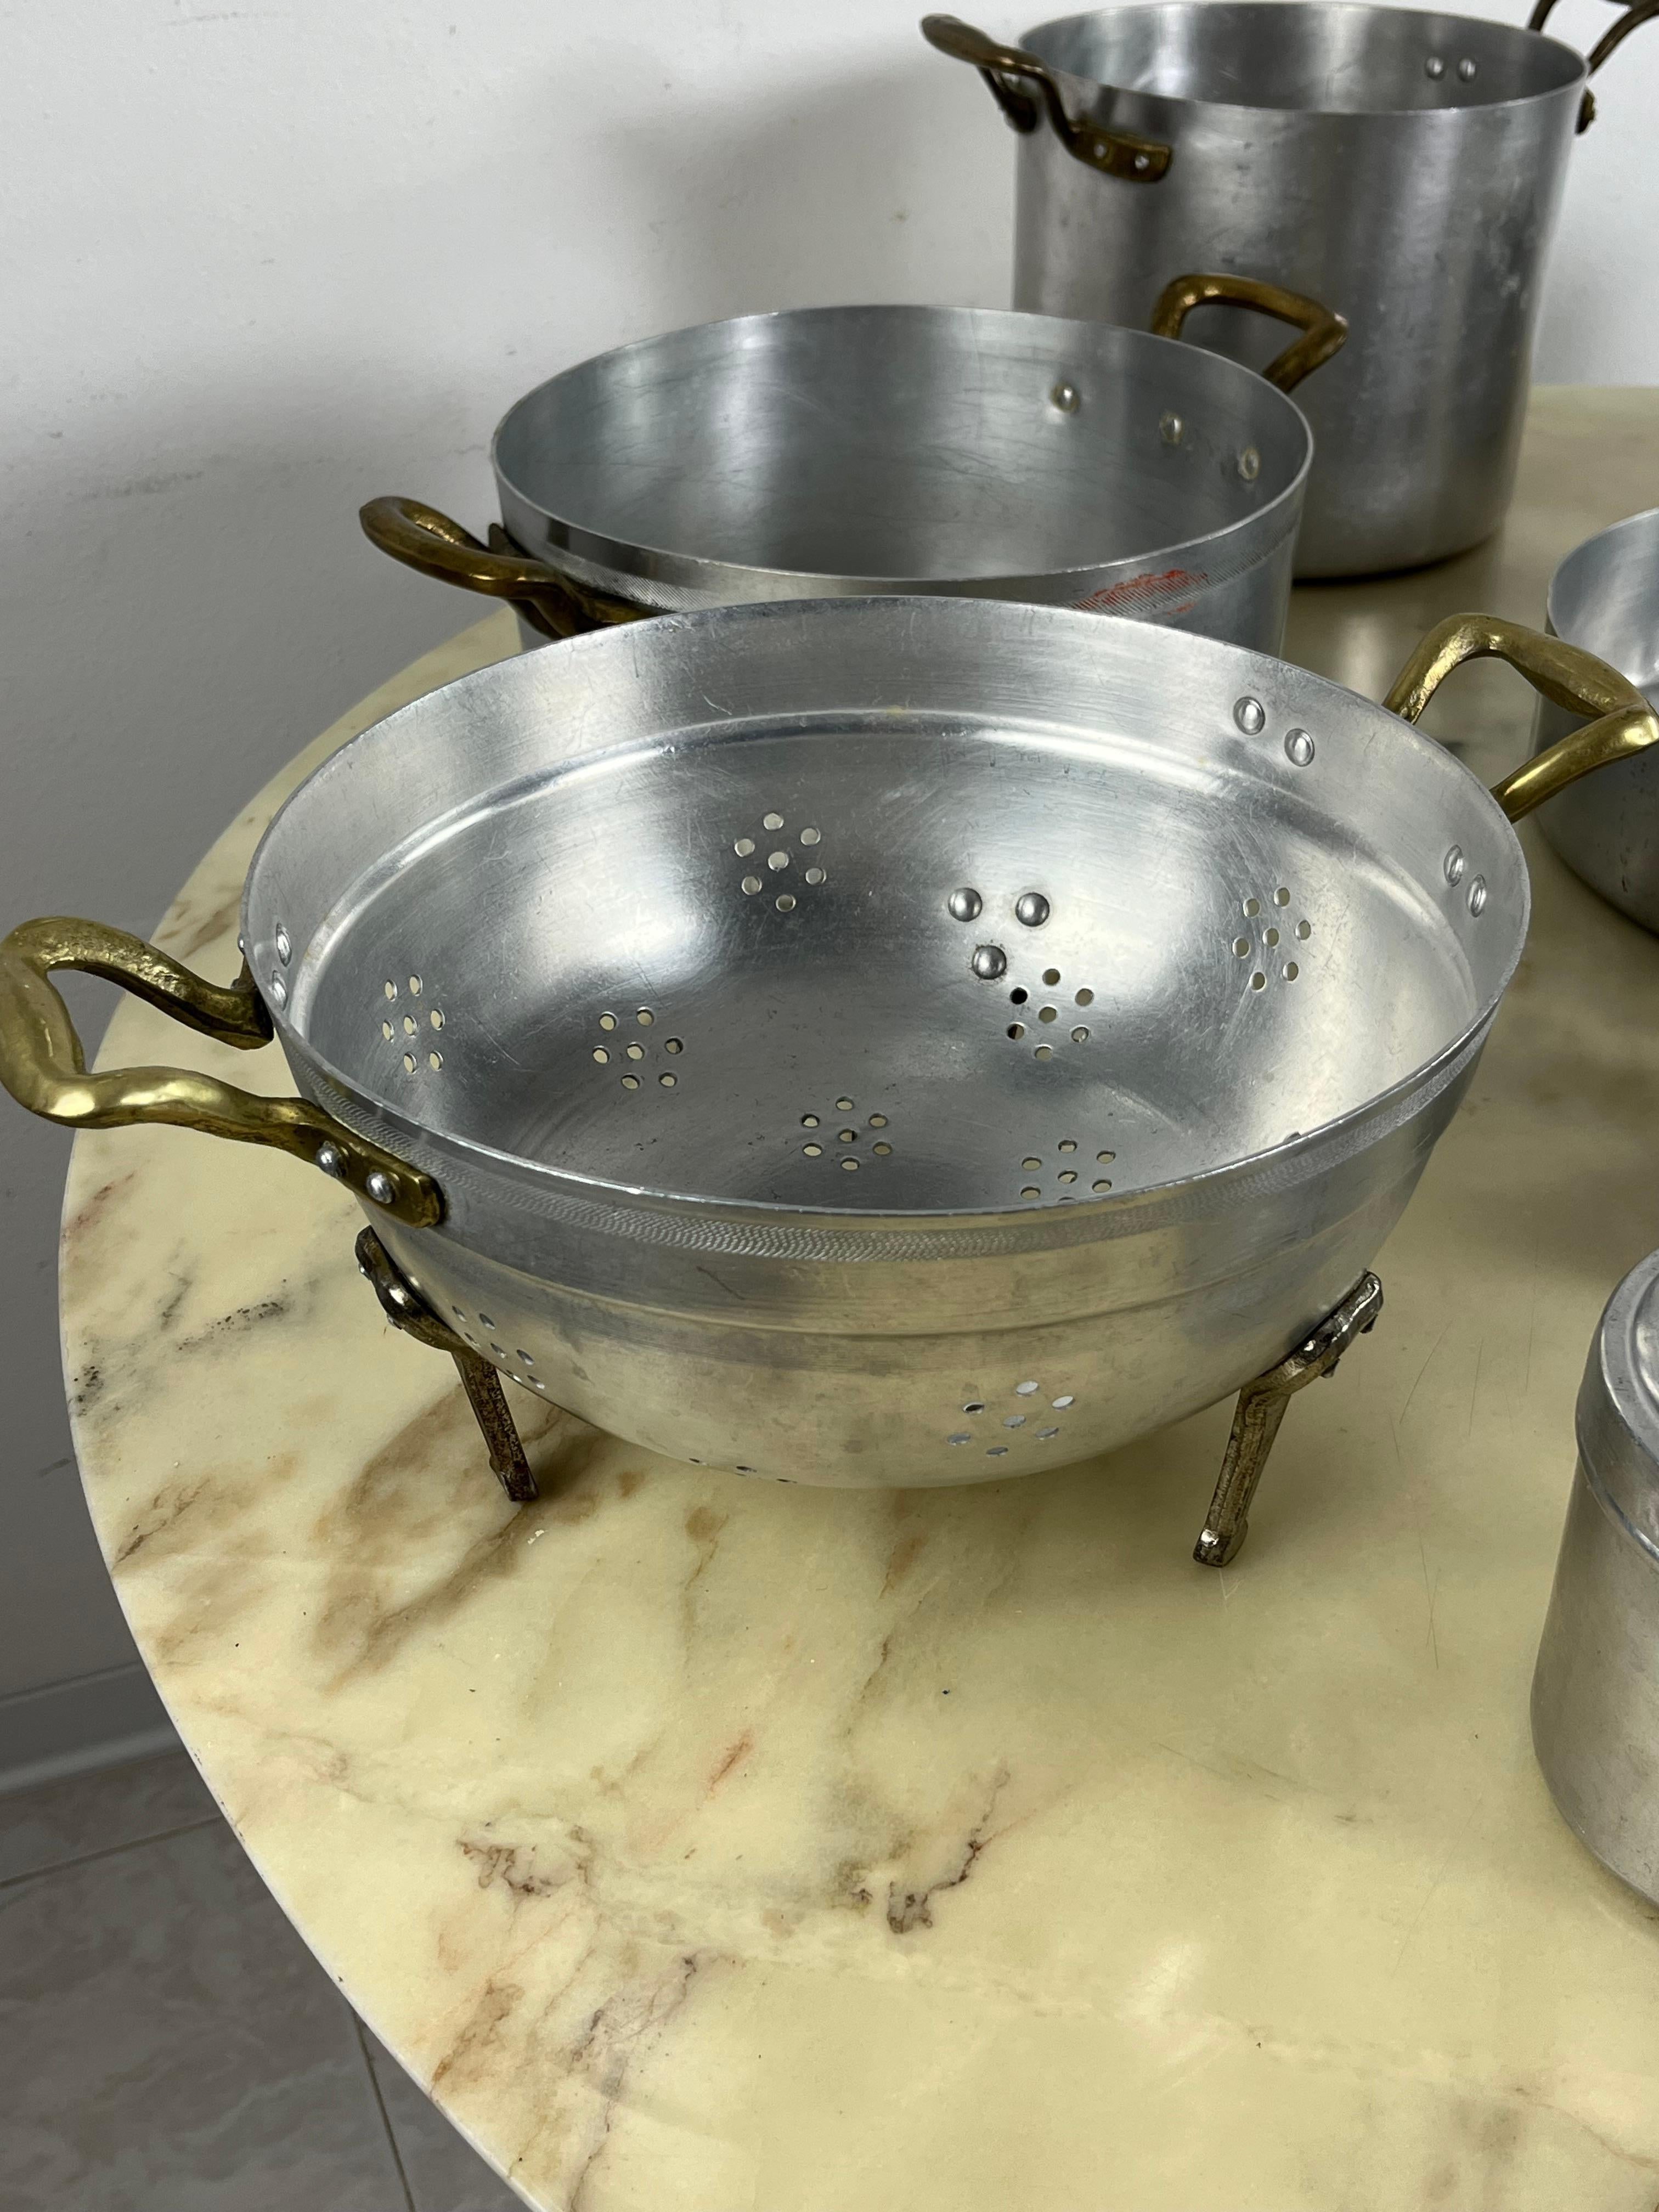 Ensemble de 11 ustensiles de cuisine en aluminium et cuivre du milieu du siècle dernier
Trouvé dans une ancienne maison de campagne de l'arrière-pays sicilien.
L'ensemble se compose d'une poêle d'un diamètre de 26 cm, de 3 casseroles (diamètre de 23